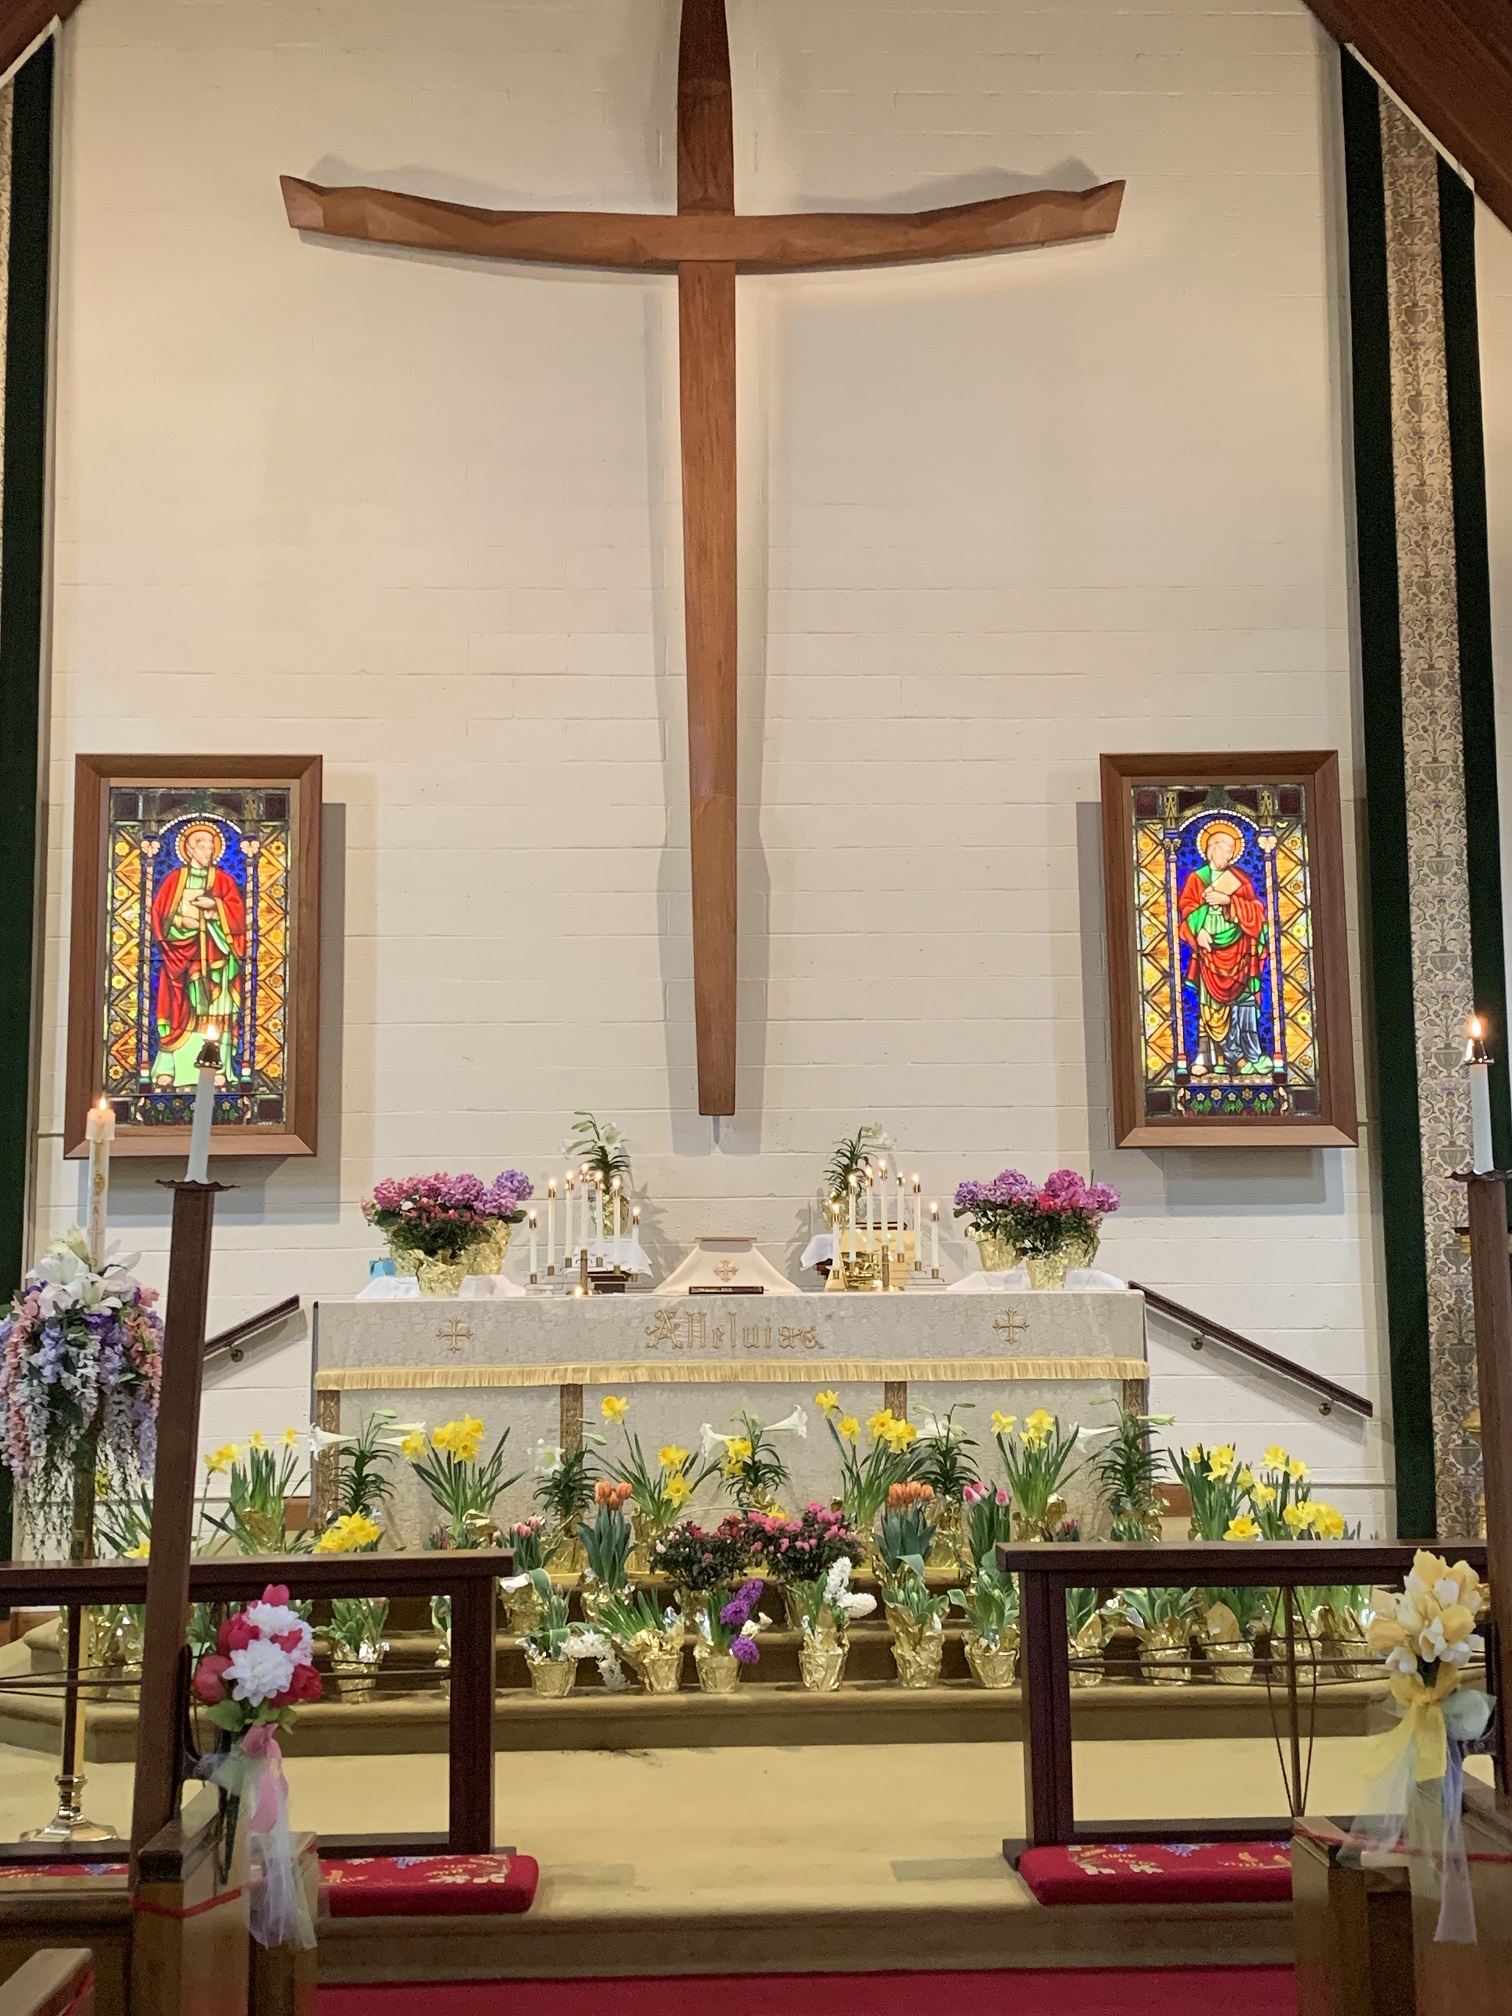 St Luke's, Easter Sunday 2022
